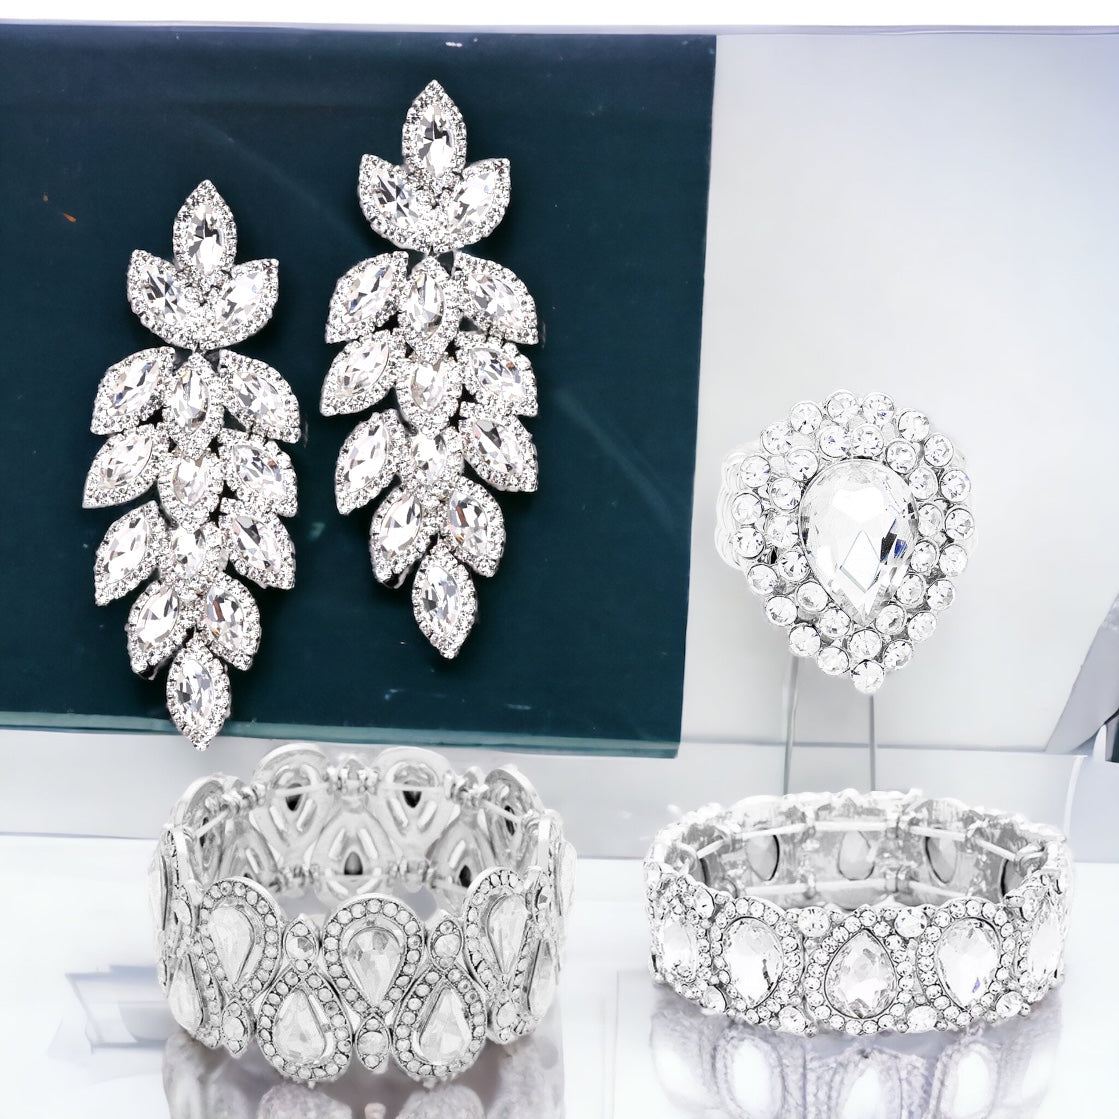 Sydney - clear silver marquise rhinestone jewelry set